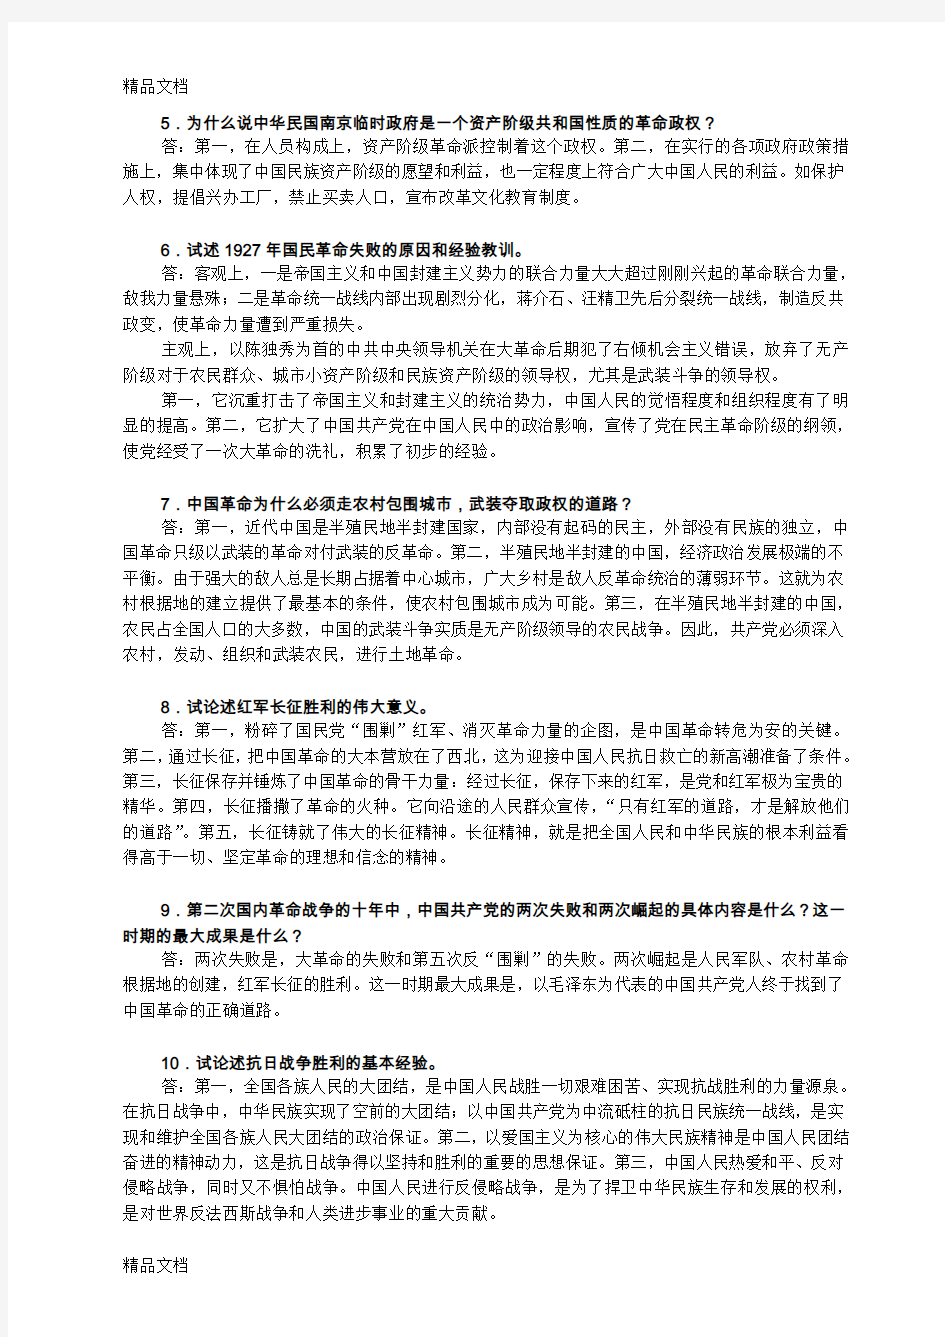 中国近现代史纲要论述题精选20题教学提纲